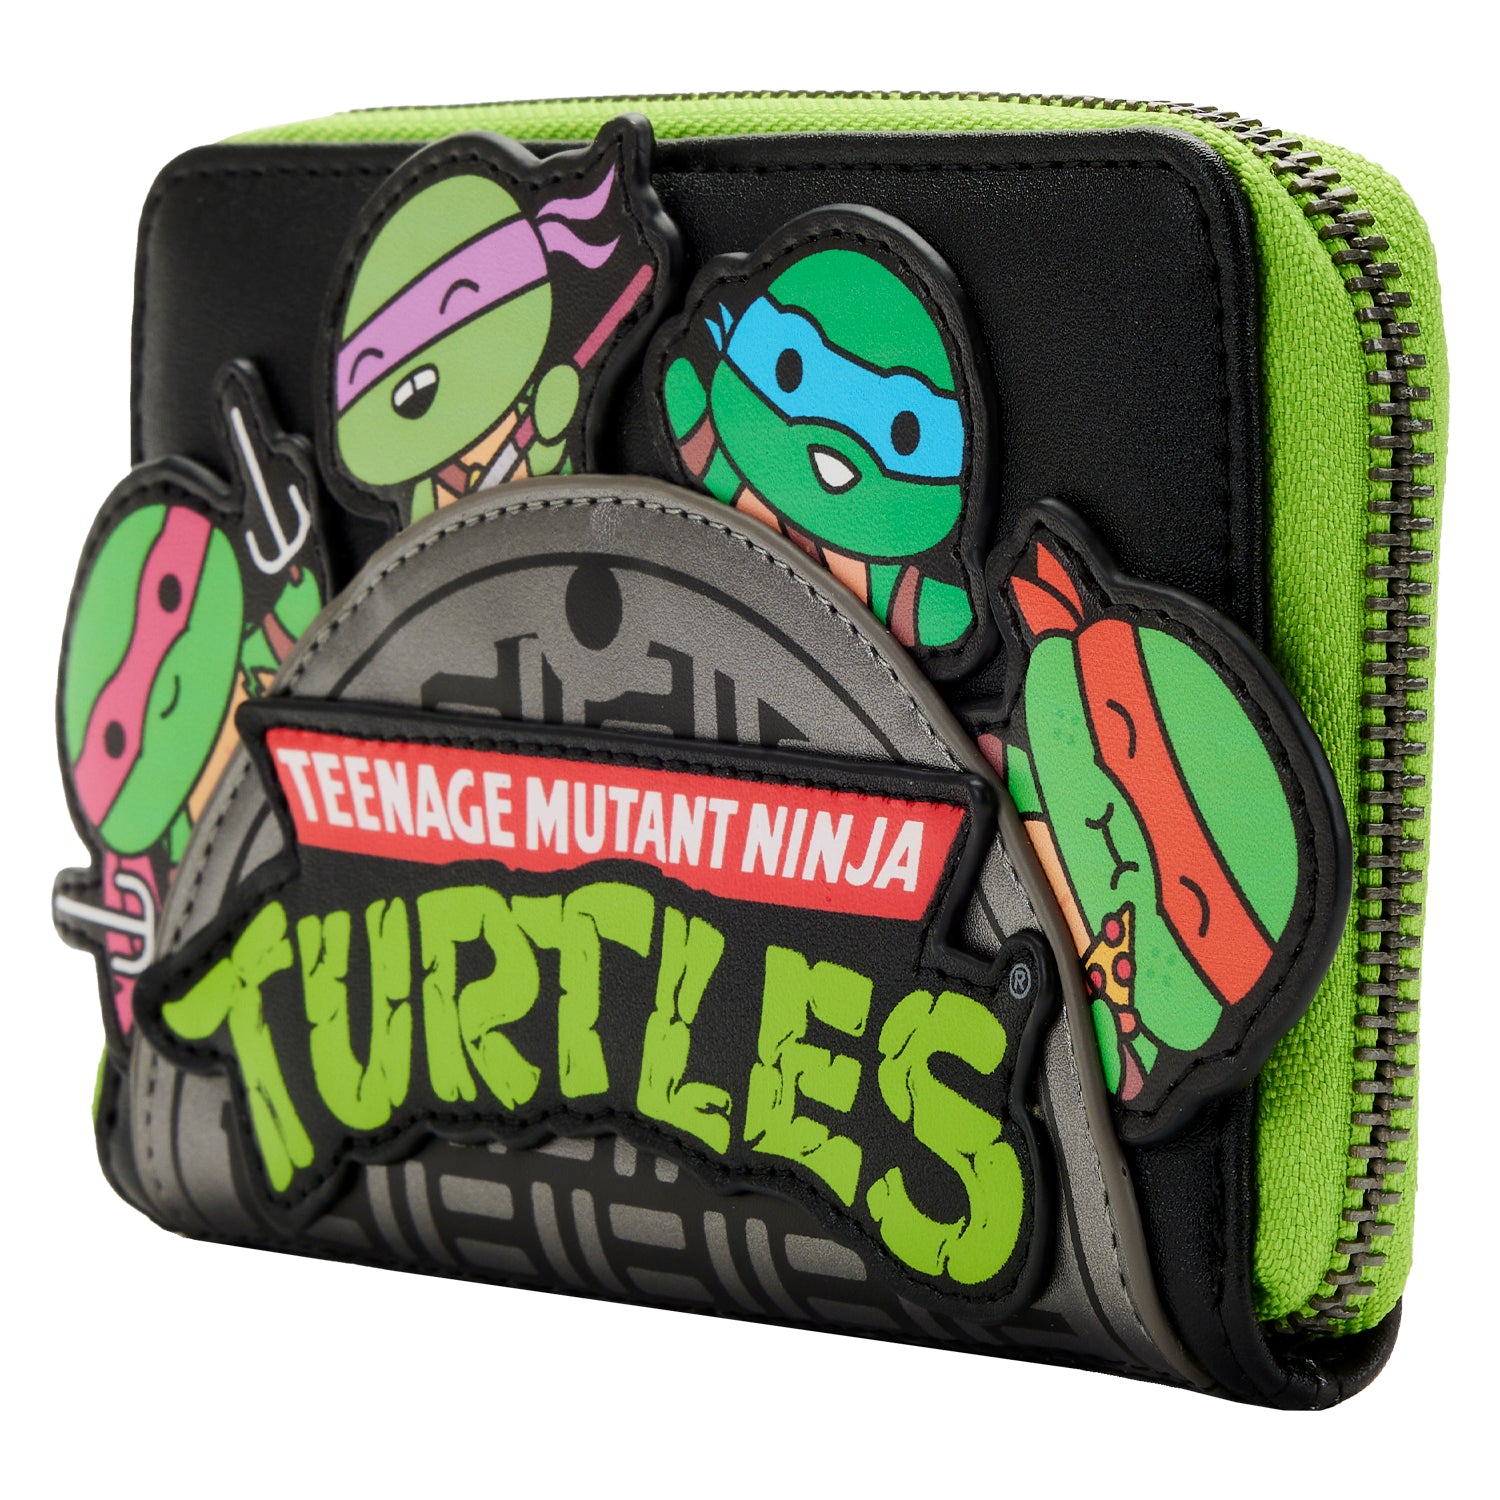 Teenage Mutant Ninja Turtles | Sewer Cap Zip Around Wallet